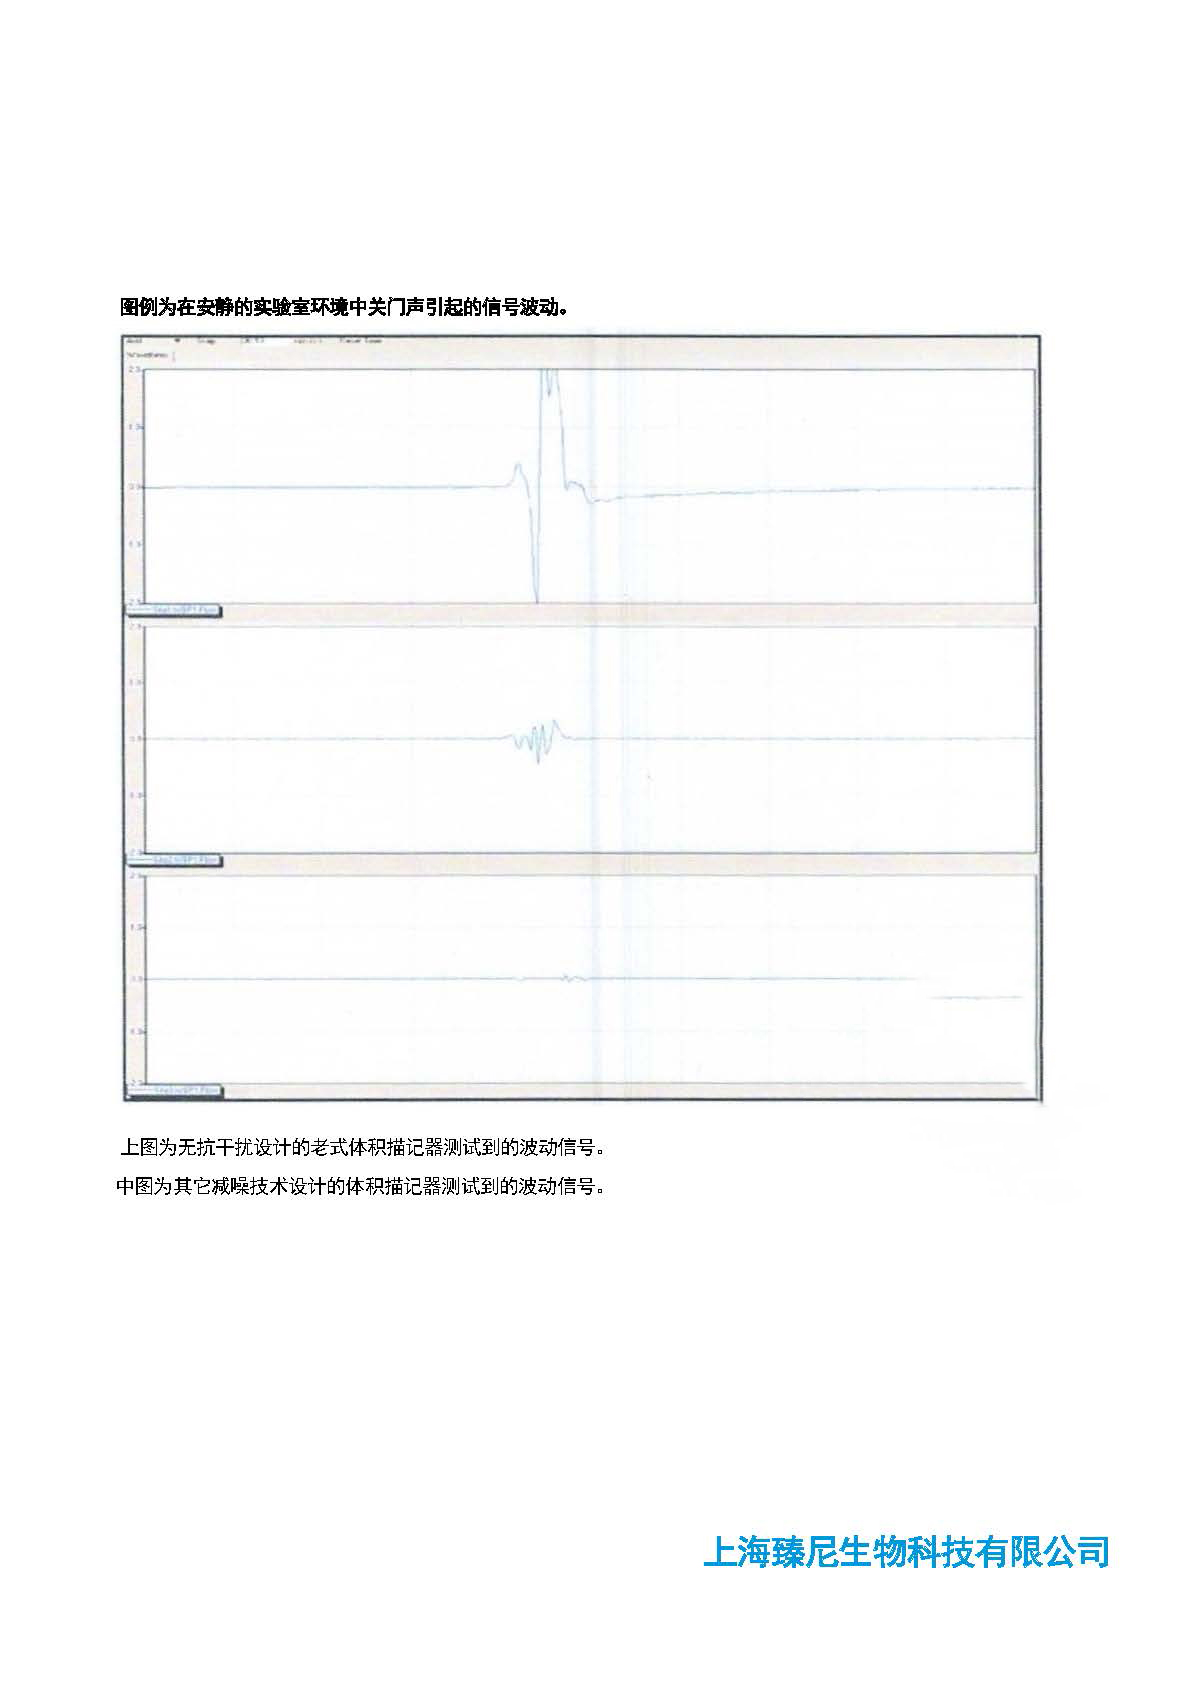 2.臻尼生物肺功能研究产品彩页_页面_4.jpg